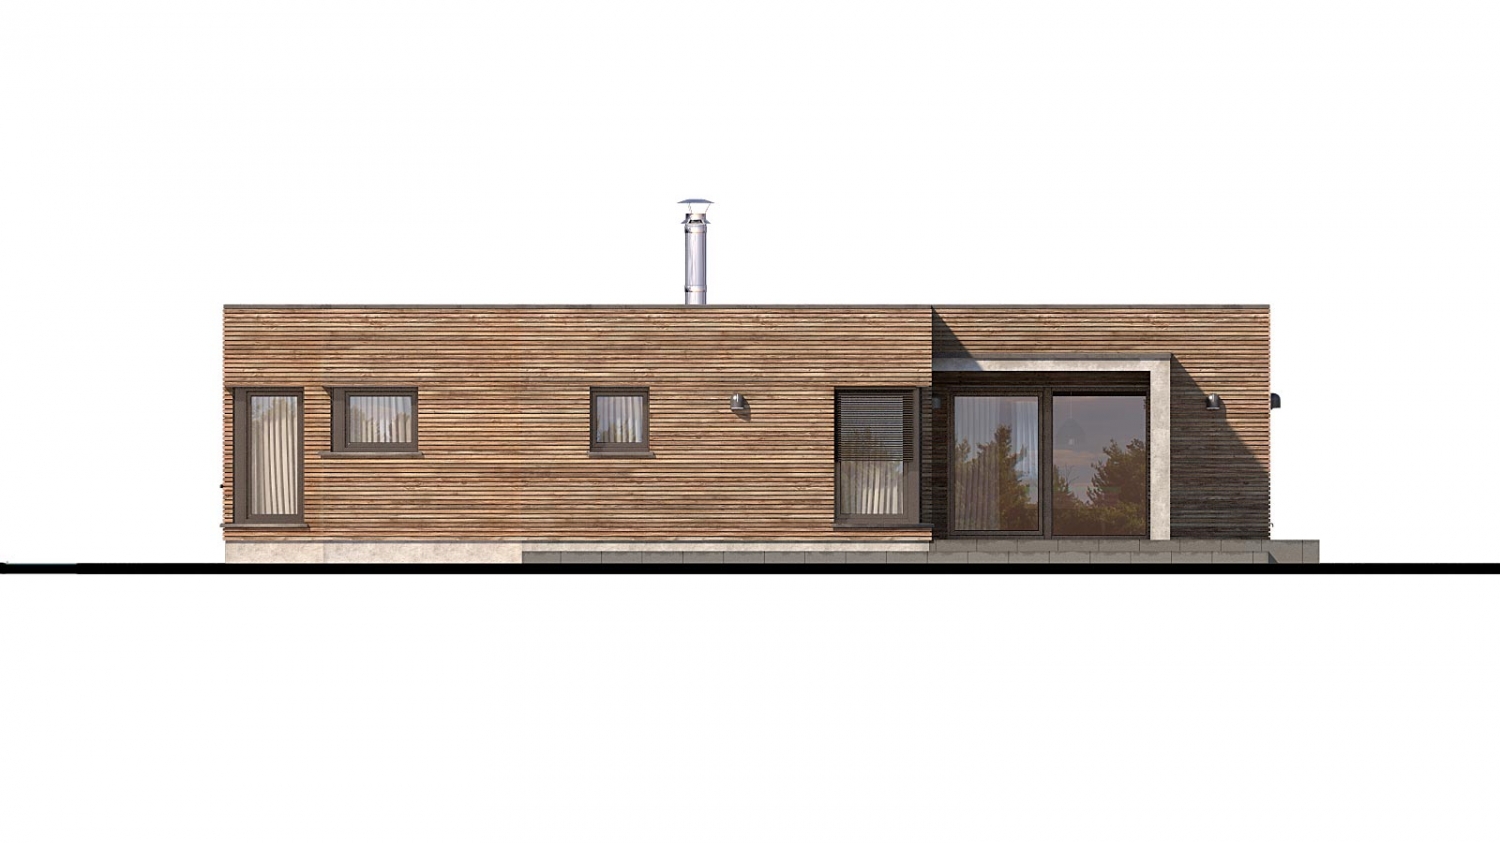 Zrkadlový pohľad 3. - Luxusní 4-pokojový zděný dům s dvojgaráží, plochou rovnou střechou.